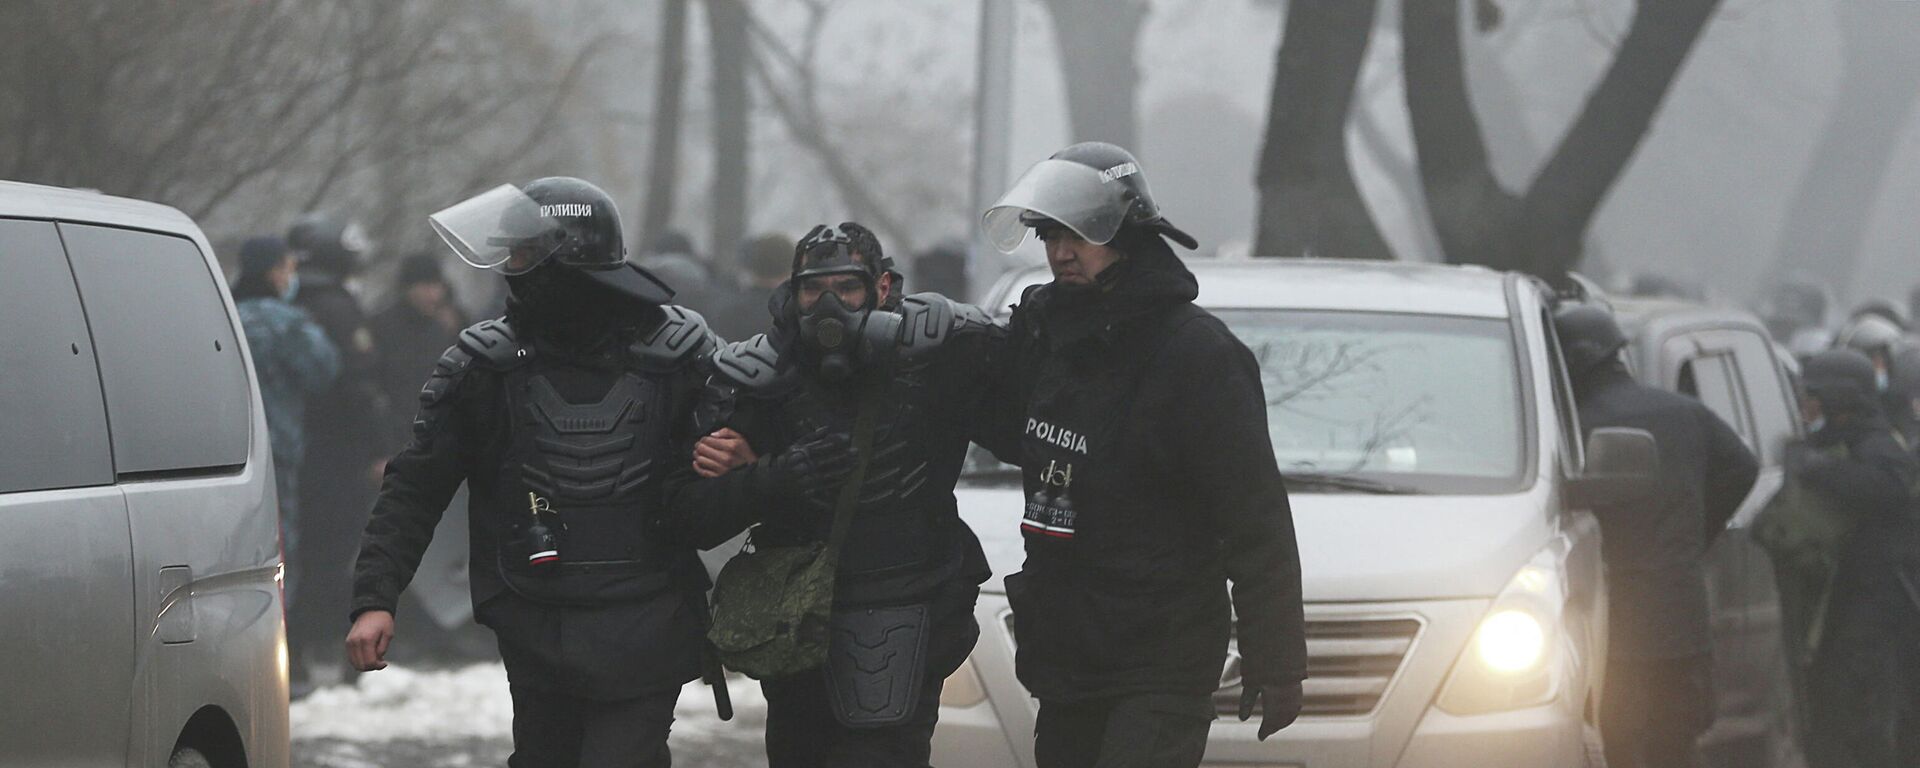 Казахские силовики во время протестов в Алма-Ате, 5 января 2022 - Sputnik Литва, 1920, 07.01.2022